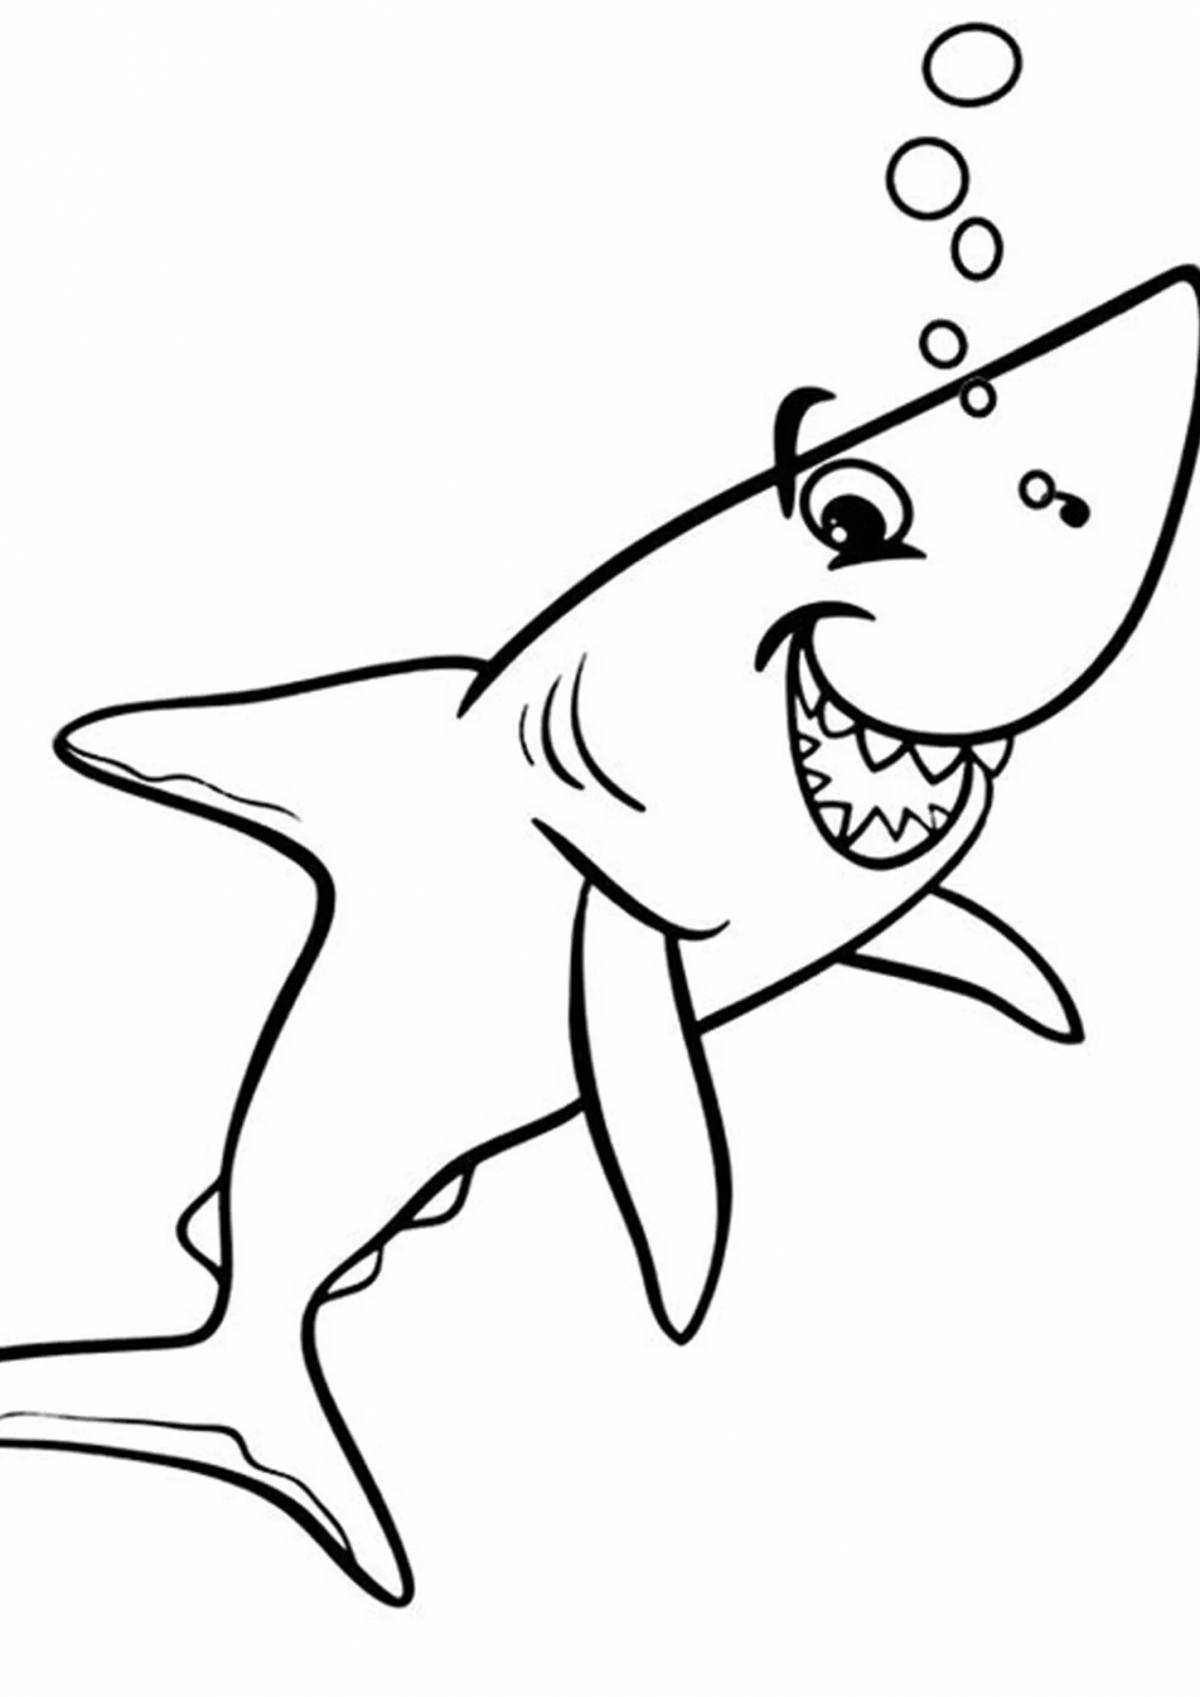 Увлекательная раскраска акулы для детей